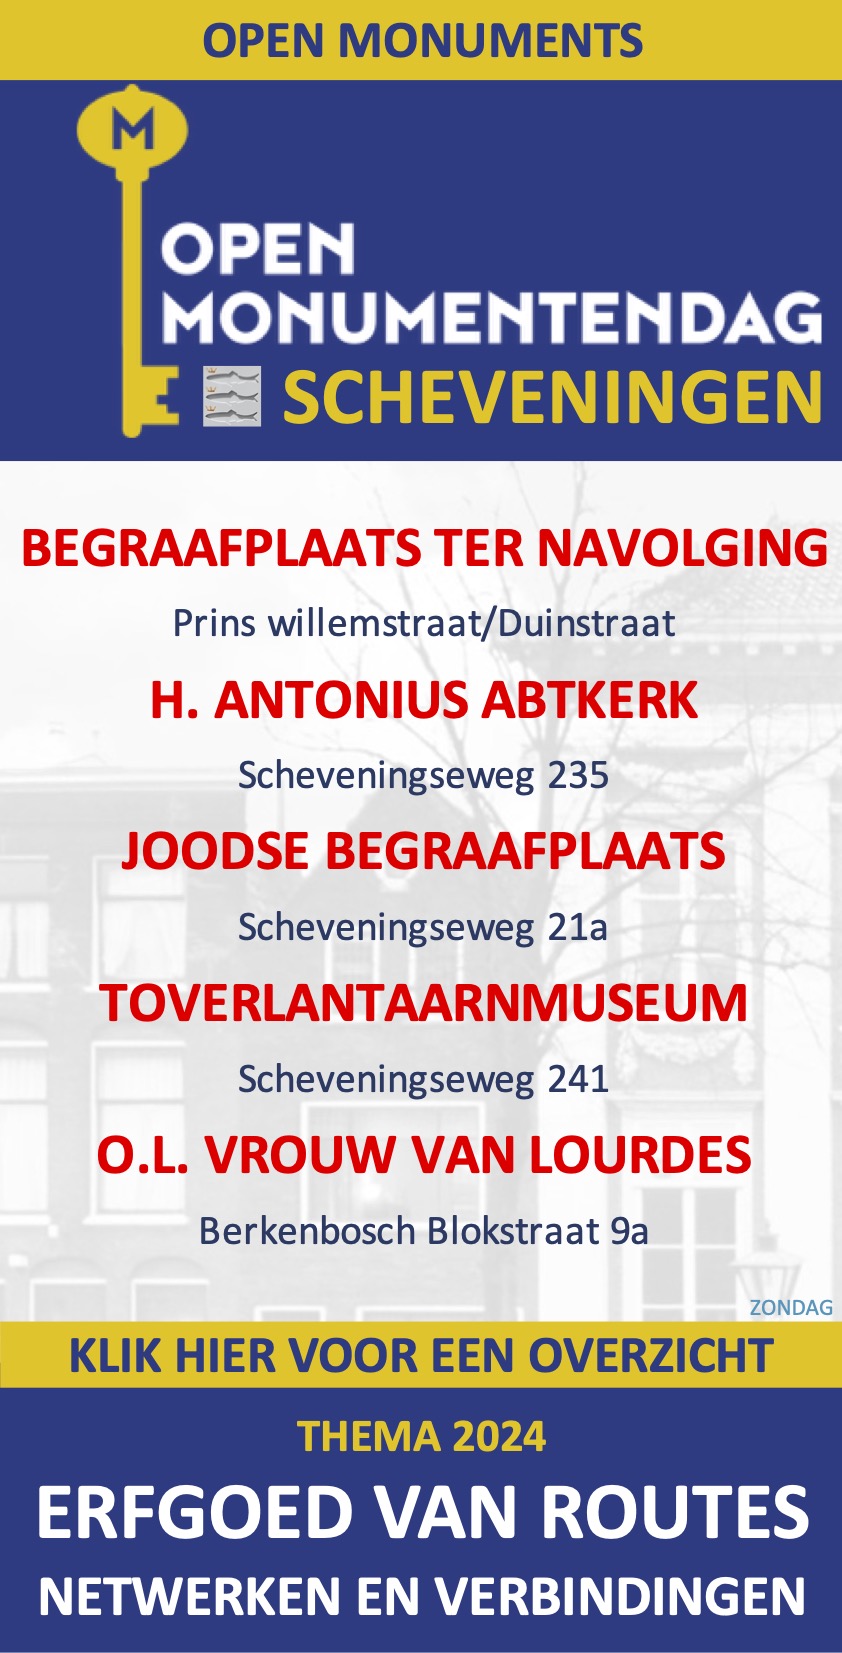 Open-Monumentendag-11-en-12-september-2021-Zondag-Scheveningen